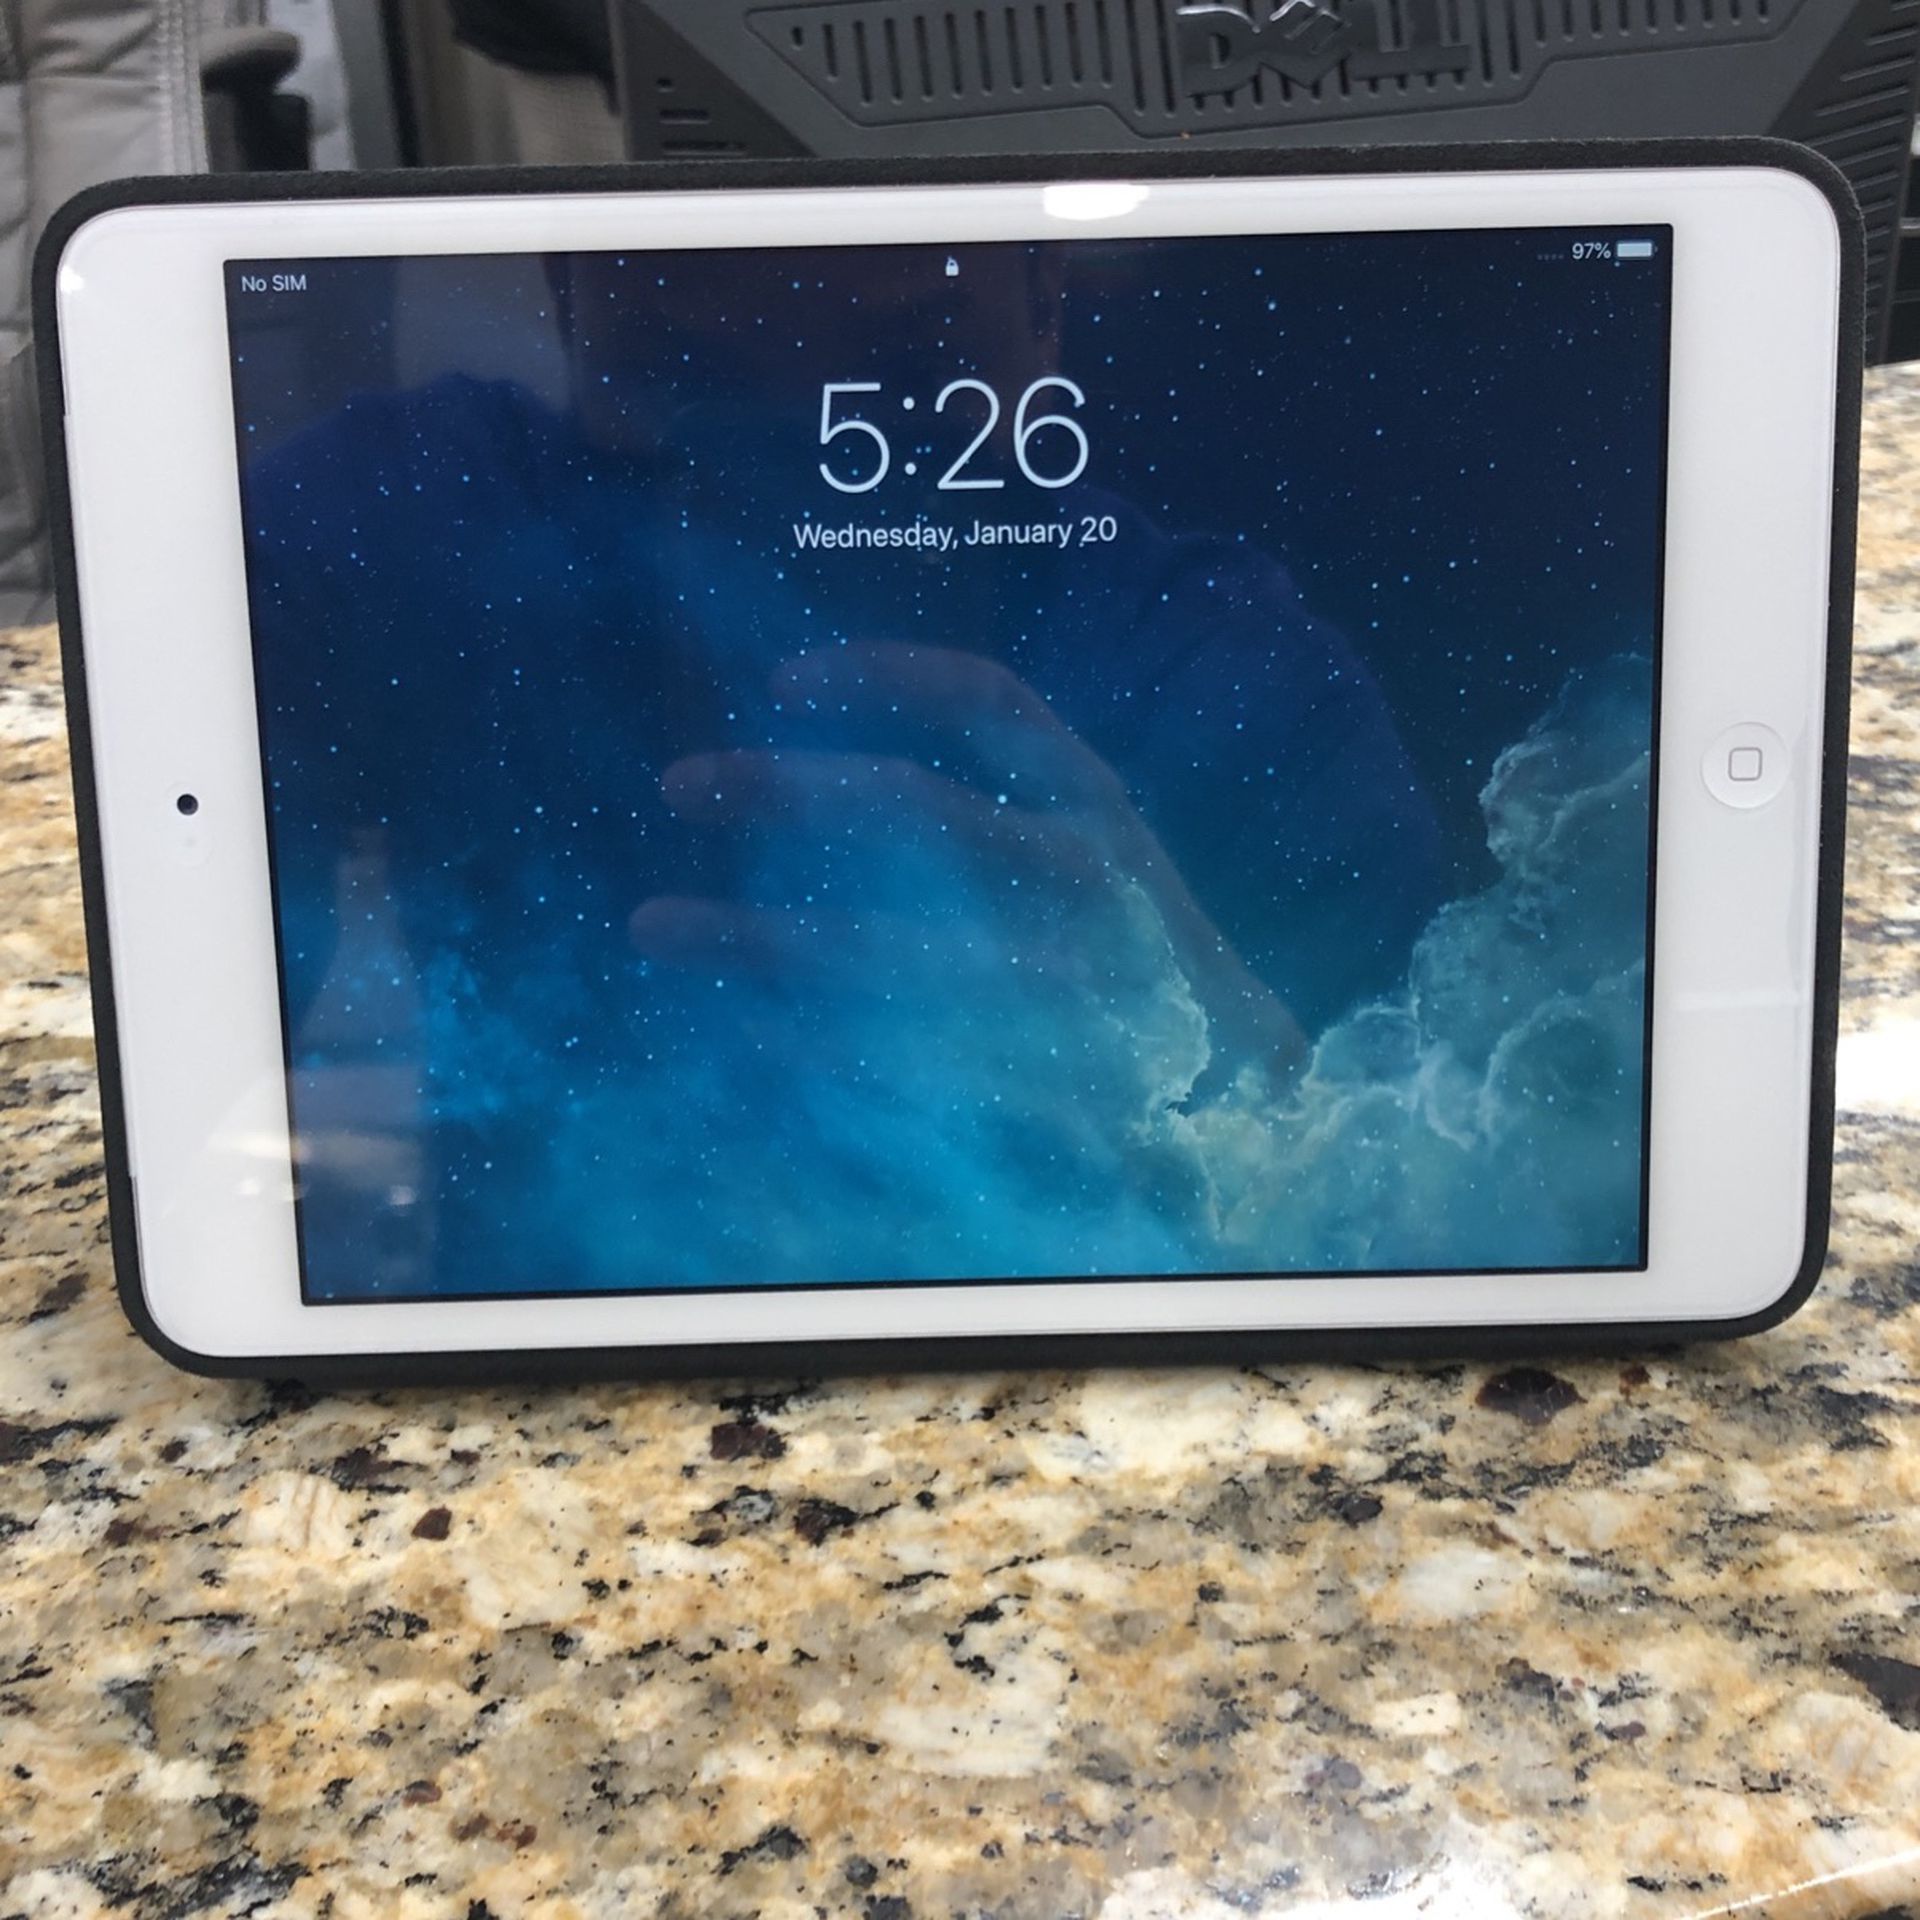 iPad Mini 2 With SmartCase